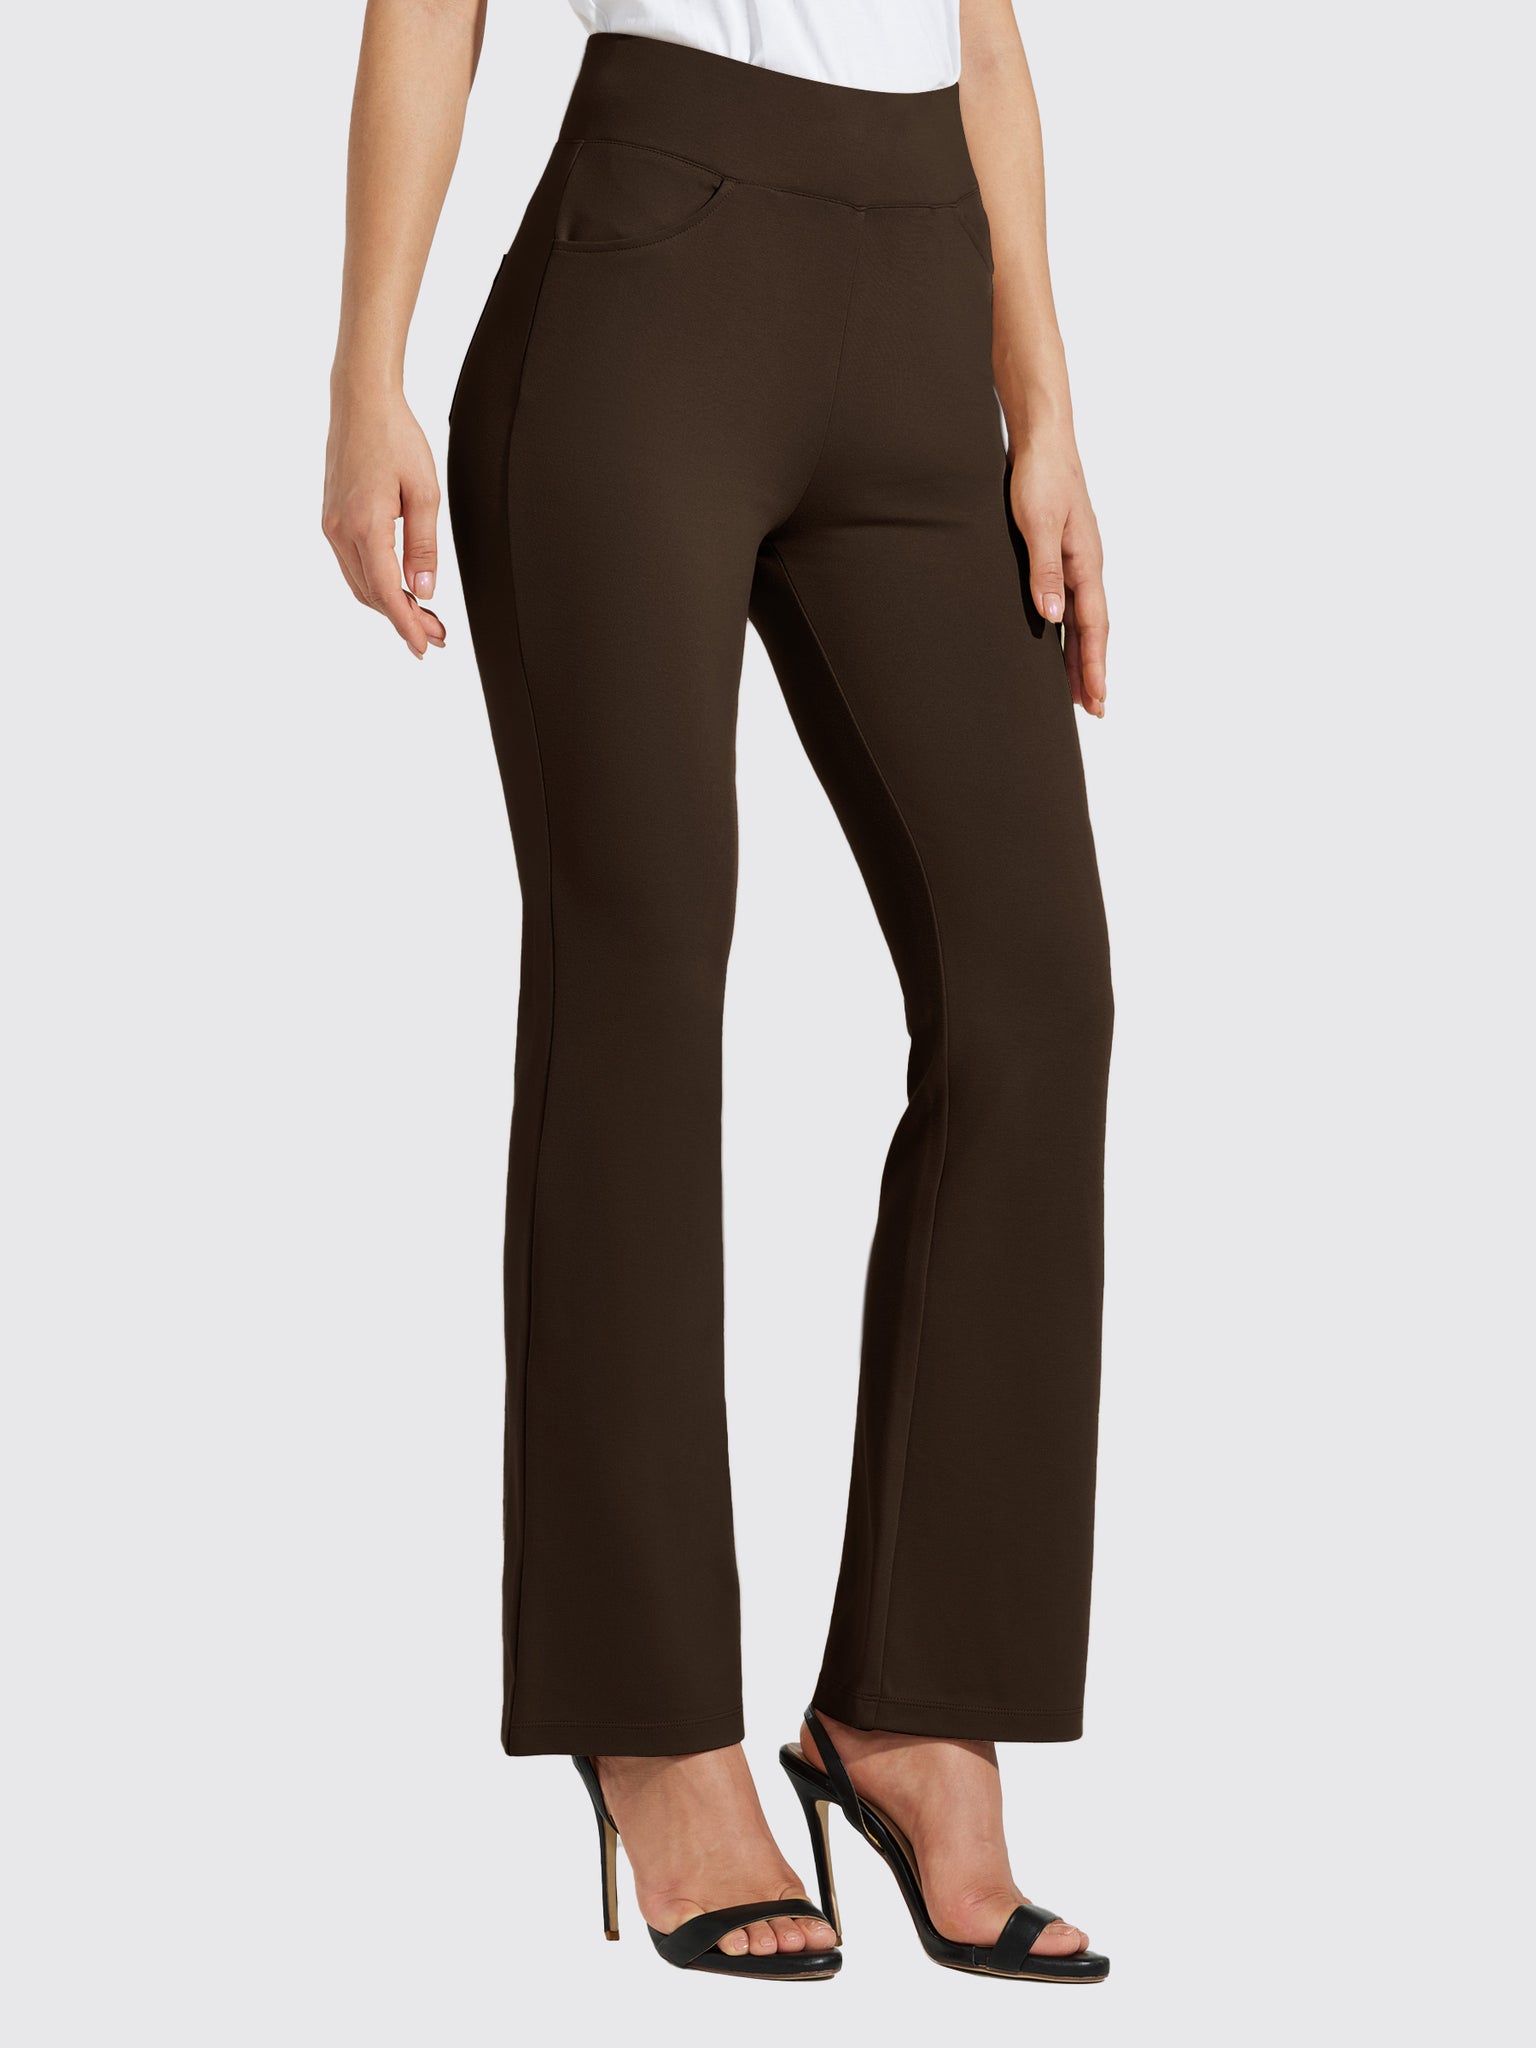 Women's Pull-On Slim Bootcut Pants_Brown_model3